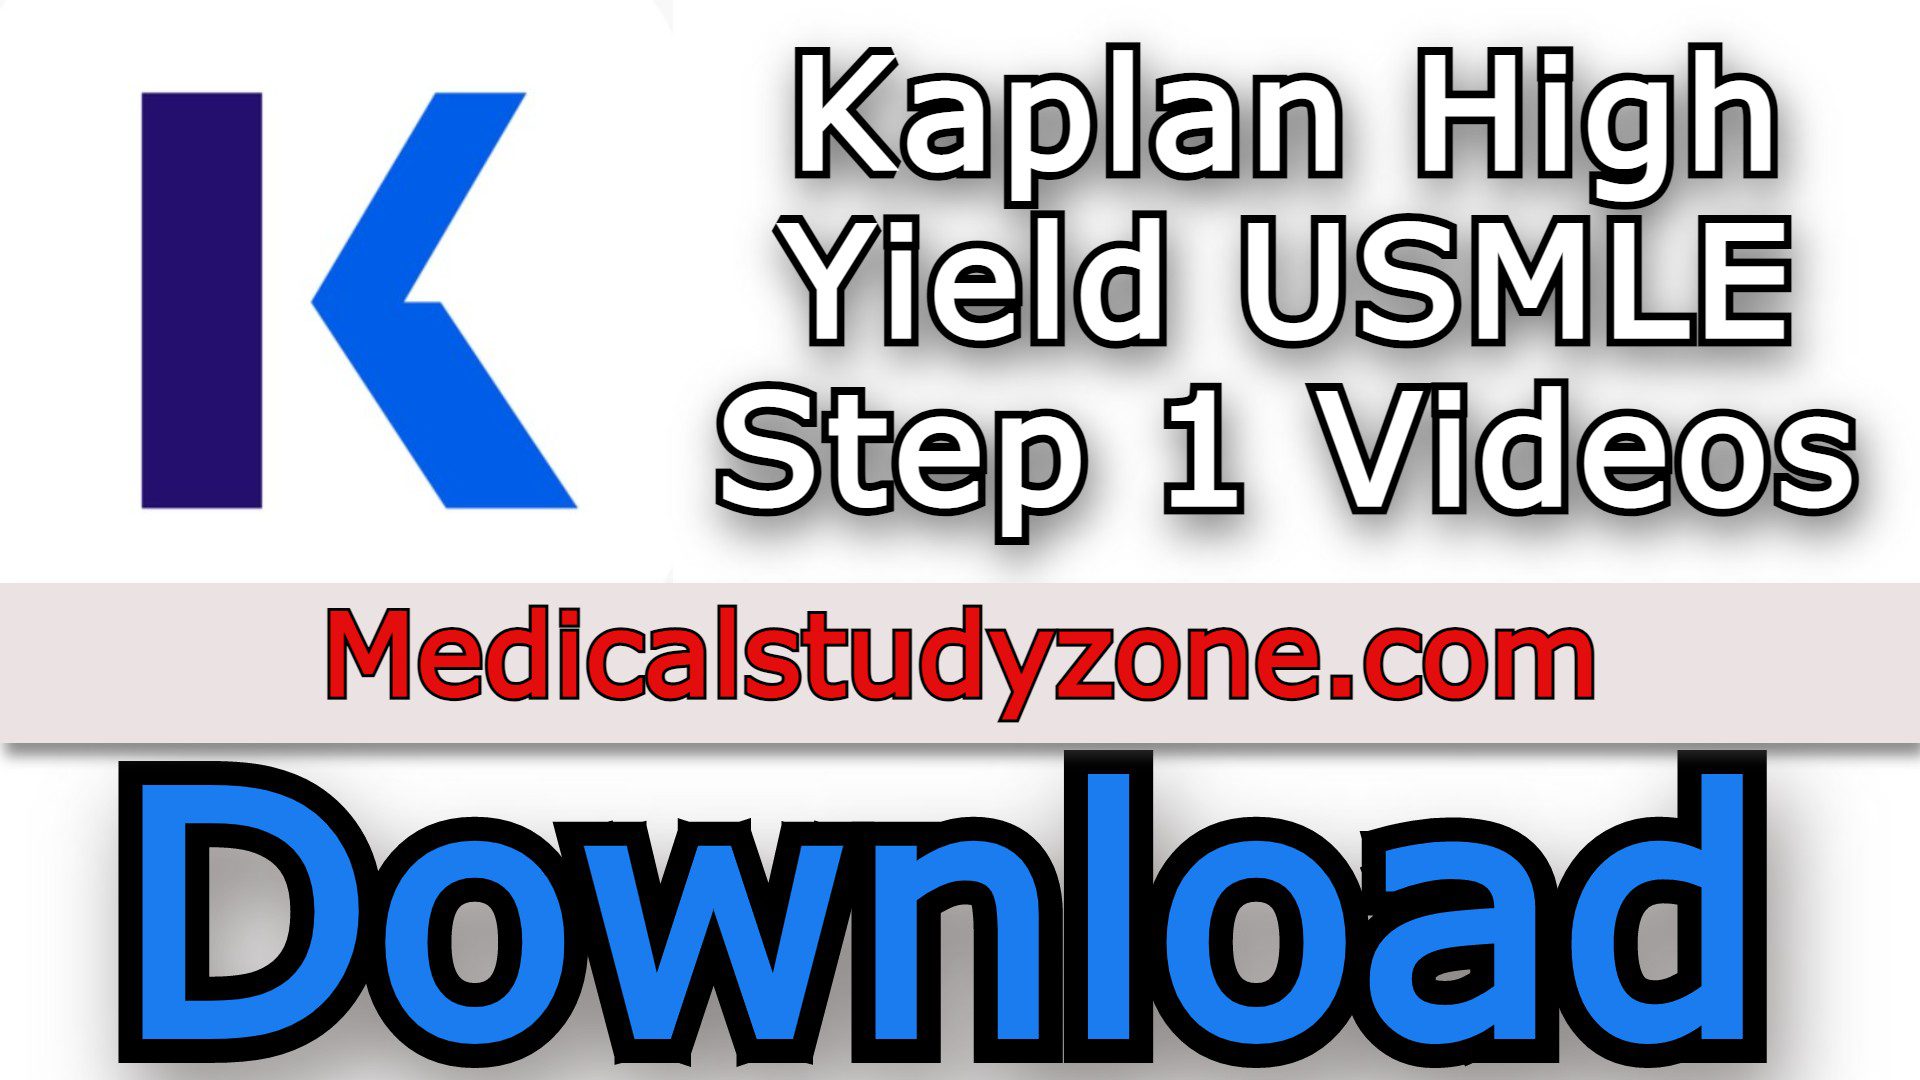 Kaplan High Yield USMLE Step 1 Videos 2022 Free Download